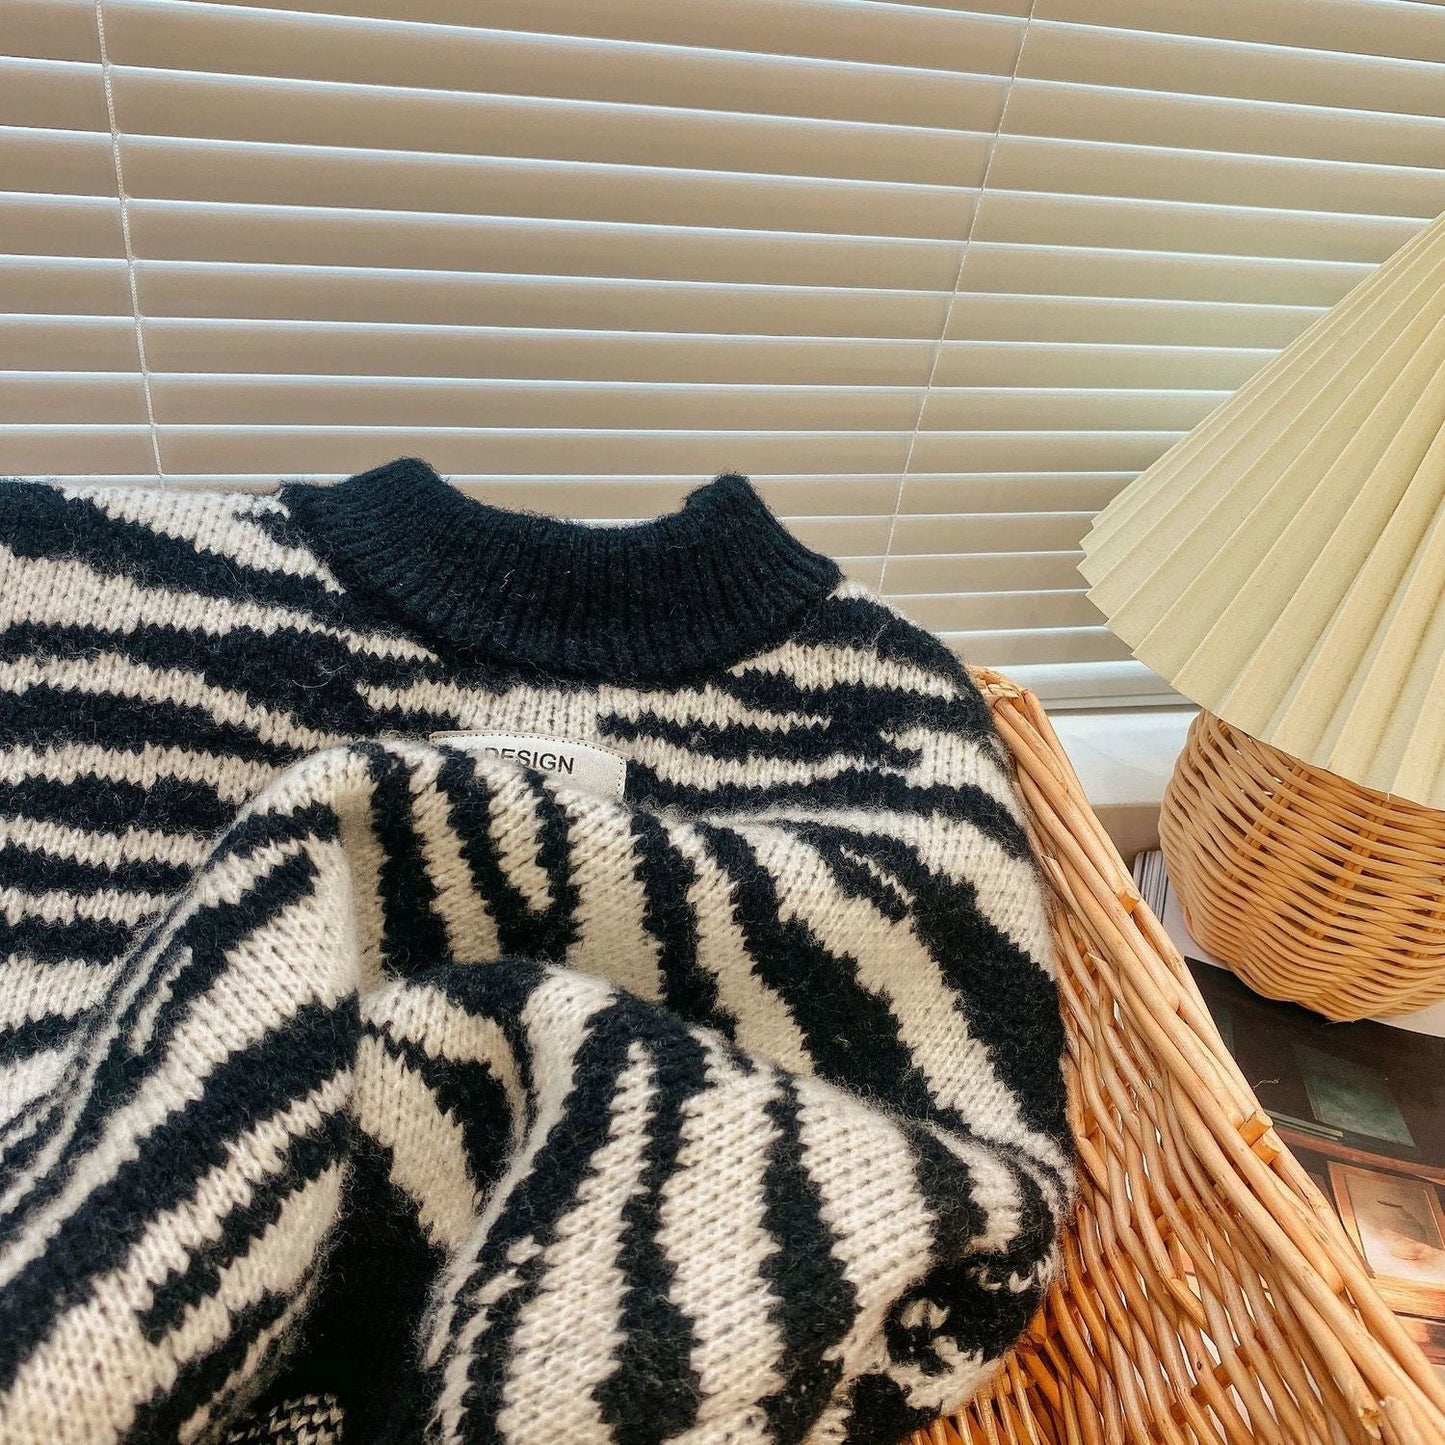 Cozy Zebra Knit High Neck Sweatshirt - JAC